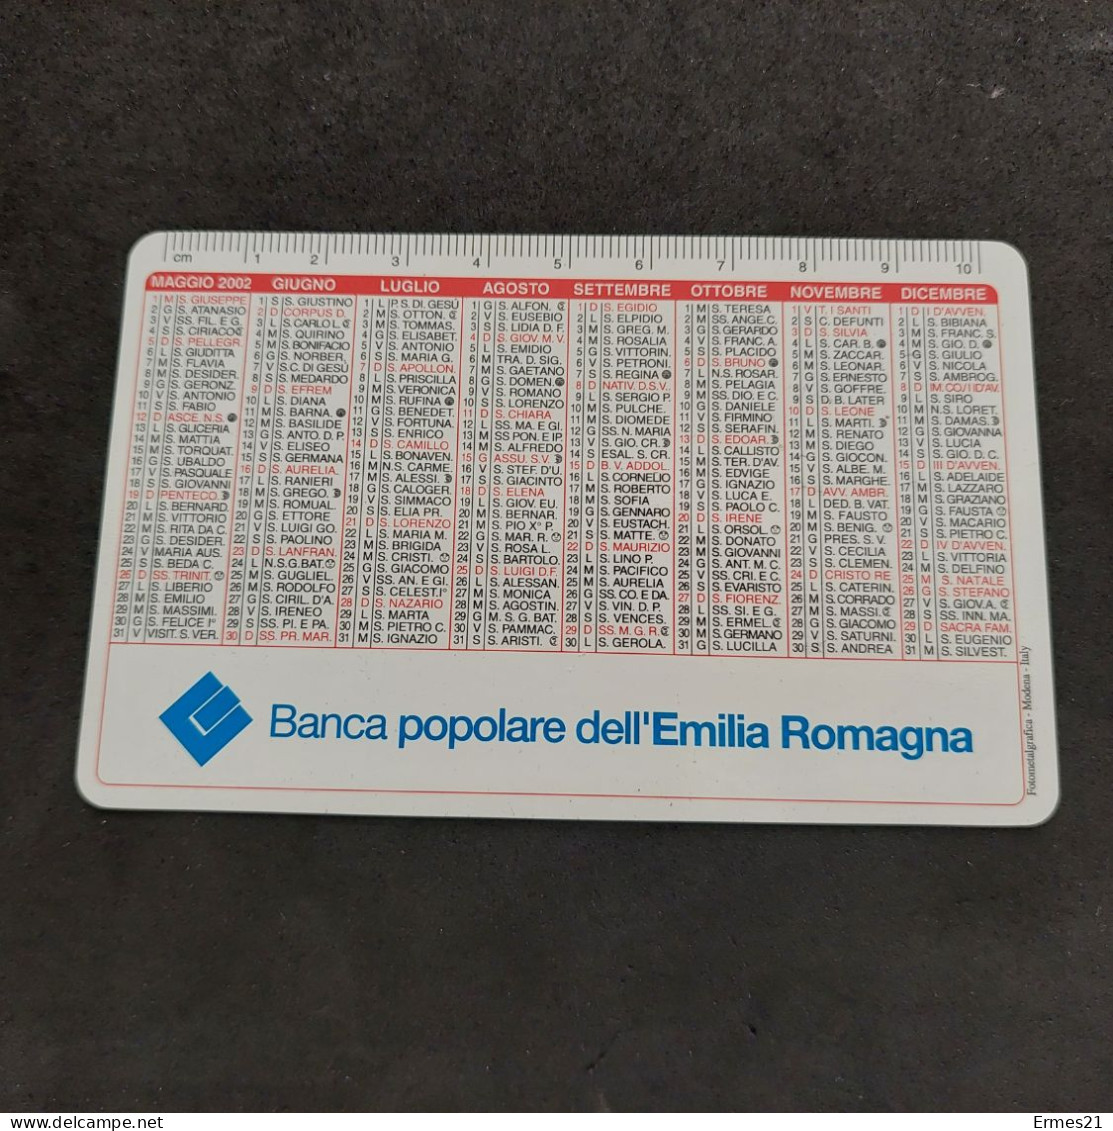 Calendarietto 2002 Banca Popolare Dell'Emilia Romagna. Condizioni Eccellenti. Plastificato. - Small : 2001-...